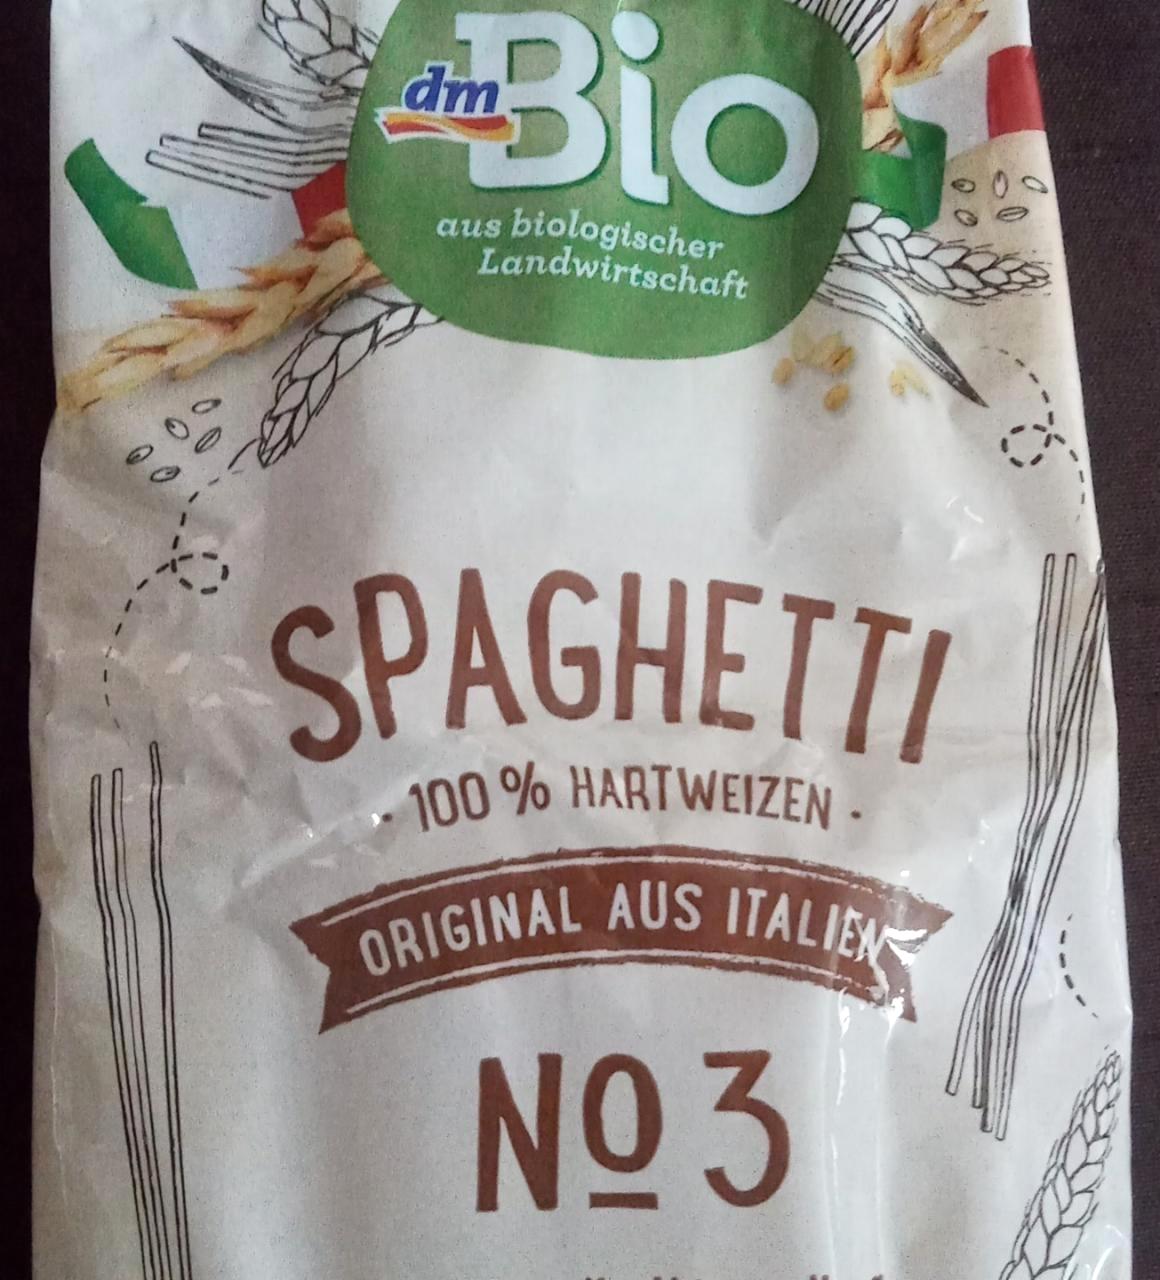 Képek - Spagetti tészta No3 dmBio